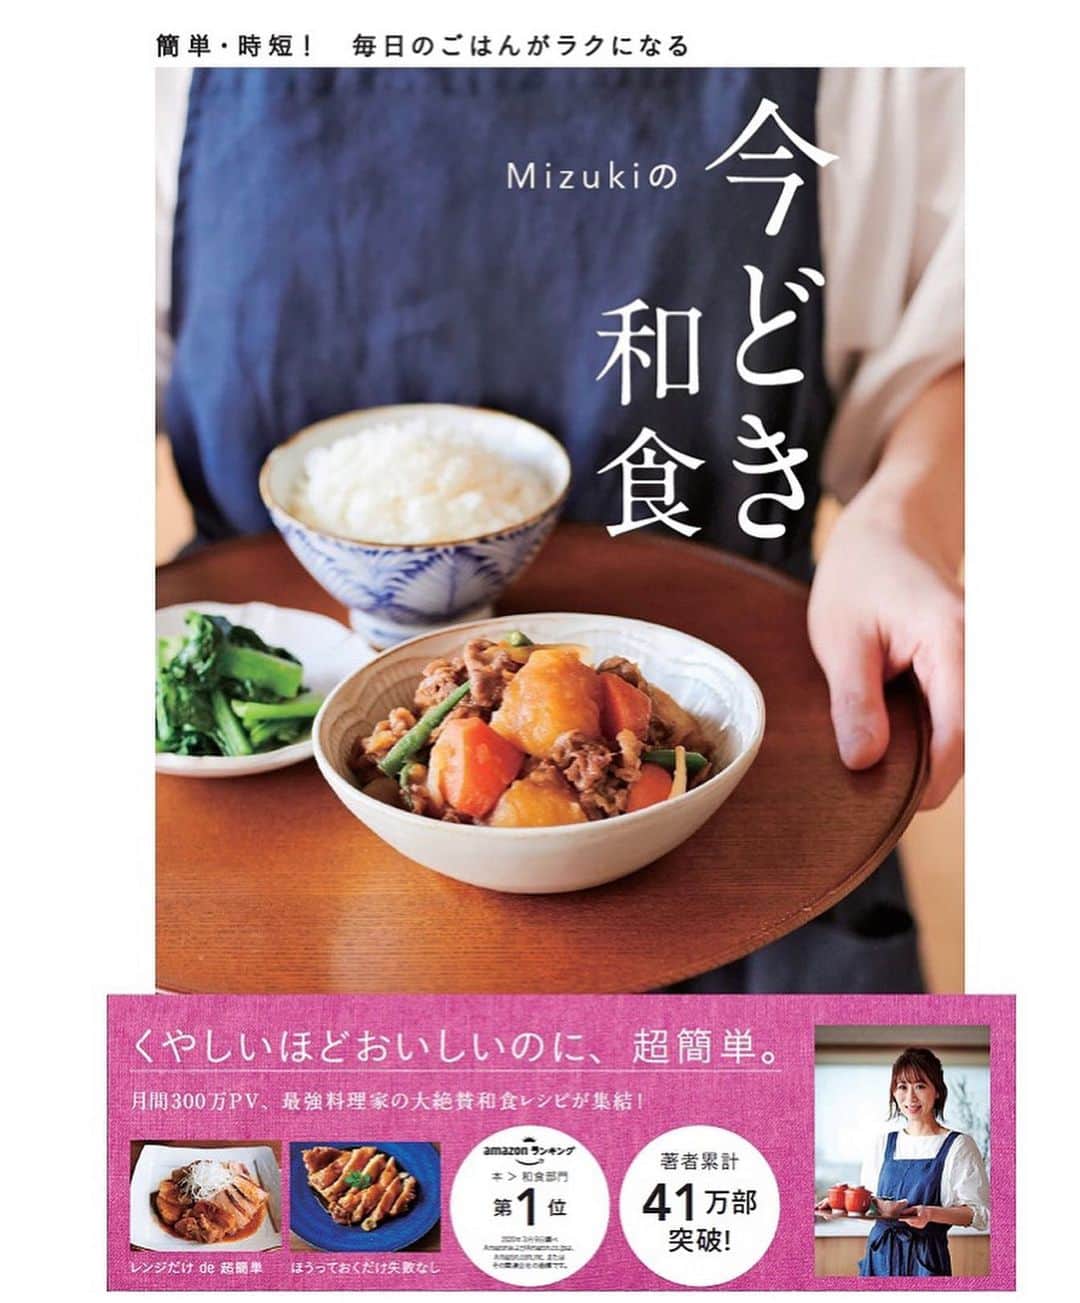 Mizuki【料理ブロガー・簡単レシピ】さんのインスタグラム写真 - (Mizuki【料理ブロガー・簡単レシピ】Instagram)「・﻿ 【#レシピ 】ーーーーー﻿ ♡鶏団子のうま塩鍋♡﻿ ーーーーーーーーーーー﻿ ﻿ ﻿ ﻿ おはようございます(*^^*)﻿ ﻿ 今日ご紹介させていただくのは﻿ \\ 鶏団子のうま塩鍋 //﻿ ﻿ うま味たっぷりの鶏団子が﻿ あっさりコクのあるスープと好相性♡﻿ 野菜もたっぷり食べられますよ〜♩﻿ (〆はうどんかラーメン、雑炊もおすすめ🥰)﻿ ﻿ とっても簡単にできるので﻿ よかったらお試し下さいね(*´艸`)﻿ ﻿ ﻿ ﻿ ＿＿＿＿＿＿＿＿＿＿＿＿＿＿＿＿＿＿＿＿﻿ 【2〜3人分】﻿ ●鶏ひき肉...200g﻿ ●水・酒...各大1﻿ ●片栗粉...小1﻿ ●塩こしょう...少々﻿ 白菜...1/6個(250g)﻿ 長ねぎ...1/2本﻿ しめじ...1袋﻿ ☆水...600ml﻿ ☆鶏がらスープ...大1﻿ ☆醤油・ごま油...各小2﻿ ﻿ 1.ボウルに●を入れてよく混ぜる(タネ)。白菜はざく切り、長ねぎは斜め切りにする。しめじはほぐす。﻿ 2.鍋に☆を入れて中火で煮立て、タネをスプーンで落とし入れて3分煮る。続けて野菜も加え、更に5分煮る。﻿ ￣￣￣￣￣￣￣￣￣￣￣￣￣￣￣￣￣￣￣￣﻿ ﻿ ﻿ ﻿ ﻿ 《ポイント》﻿ ♦︎ひき肉の種類(もも・むね)はお好みで♩私はもも使用です♩﻿ ♦︎タネはスプーンを2本使うと落とし入れやすくなります♩﻿ ♦︎野菜はアレンジして下さいね♩﻿ ﻿ ﻿ ﻿ ﻿ ﻿ ﻿ ﻿ ﻿ 📕新刊発売中📕﻿ 【ラクしておいしい！#1品晩ごはん 】﻿ ￣￣￣￣￣￣￣￣￣￣￣￣￣￣￣￣￣﻿ 私たちだってヘトヘトな日がある•••﻿ 毎日何品も作っていられない•••﻿ もうごはんに悩みたくない😢﻿ そんな時、1品ごはんはいかがでしょう？﻿ というご提案です✨﻿ ﻿ 【1品ごはん】は﻿ 副菜いらずで全てがシンプル！﻿ ￣￣￣￣￣￣￣￣￣￣￣￣￣￣￣￣￣￣﻿ 一品つくるだけでいいから﻿ 献立を考えなくてよし！﻿ ￣￣￣￣￣￣￣￣￣￣￣￣￣￣￣￣￣￣﻿ 悩まない、疲れない、﻿ 気力や時間がなくてもなんとかなる！﻿ ￣￣￣￣￣￣￣￣￣￣￣￣￣￣￣￣￣￣﻿ そんな頼りになる﻿ 便利なお助けごはんです☺️💕﻿ (ハイライトに🔗貼っています✨)﻿ ￣￣￣￣￣￣￣￣￣￣￣￣￣￣￣￣￣﻿ ﻿ ﻿ ﻿ ﻿ ﻿ ⭐️発売中⭐️﻿ ＿＿＿＿＿＿＿＿＿＿＿＿＿＿＿＿＿＿﻿ しんどくない献立、考えました♩﻿ \15分でいただきます/﻿ 📕#Mizukiの2品献立 📕﻿ ﻿ 和食をもっとカジュアルに♩﻿ \毎日のごはんがラクになる/﻿ 📘#Mizukiの今どき和食 📘﻿ ﻿ ホケミレシピの決定版♩﻿ \はじめてでも失敗しない/﻿ 📙#ホットケーキミックスのお菓子 📙﻿ ﻿ NHKまる得マガジンテキスト☆﻿ ホットケーキミックスで﻿ 📗絶品おやつ&意外なランチ📗﻿ ￣￣￣￣￣￣￣￣￣￣￣￣￣￣￣￣￣￣﻿ ﻿ ﻿ ﻿ ＿＿＿＿＿＿＿＿＿＿＿＿＿＿＿＿＿＿﻿ レシピを作って下さった際や﻿ レシピ本についてのご投稿には﻿ タグ付け( @mizuki_31cafe )して﻿ お知らせいただけると嬉しいです😊💕﻿ ￣￣￣￣￣￣￣￣￣￣￣￣￣￣￣￣￣￣﻿ ﻿ ﻿ ﻿ ﻿ #鶏団子#鍋#塩鍋#白菜レシピ#Mizuki#簡単レシピ#時短レシピ#節約レシピ#料理#フーディーテーブル#マカロニメイト#おうちごはん#デリスタグラマー#料理好きな人と繋がりたい#おうちごはんlover#写真好きな人と繋がりたい#foodpic#cooking#recipe#lin_stagrammer#foodporn#yummy#f52grams#鶏団子のうま塩鍋m」1月9日 7時26分 - mizuki_31cafe